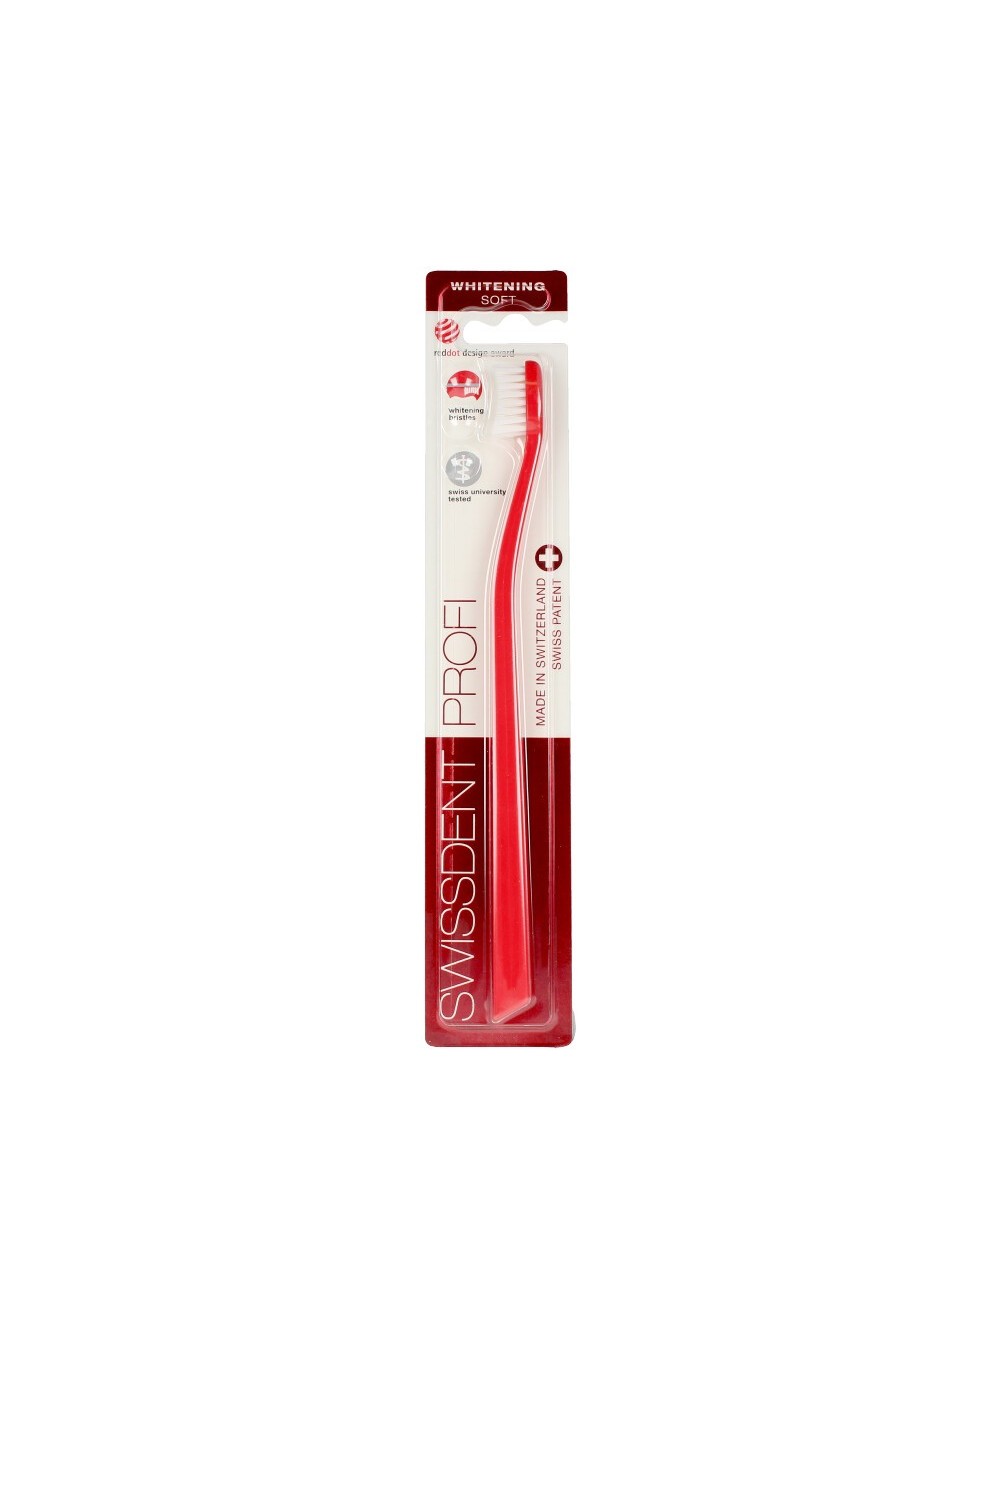 Swissdent Profi Whitening Classic Toothbrush Red